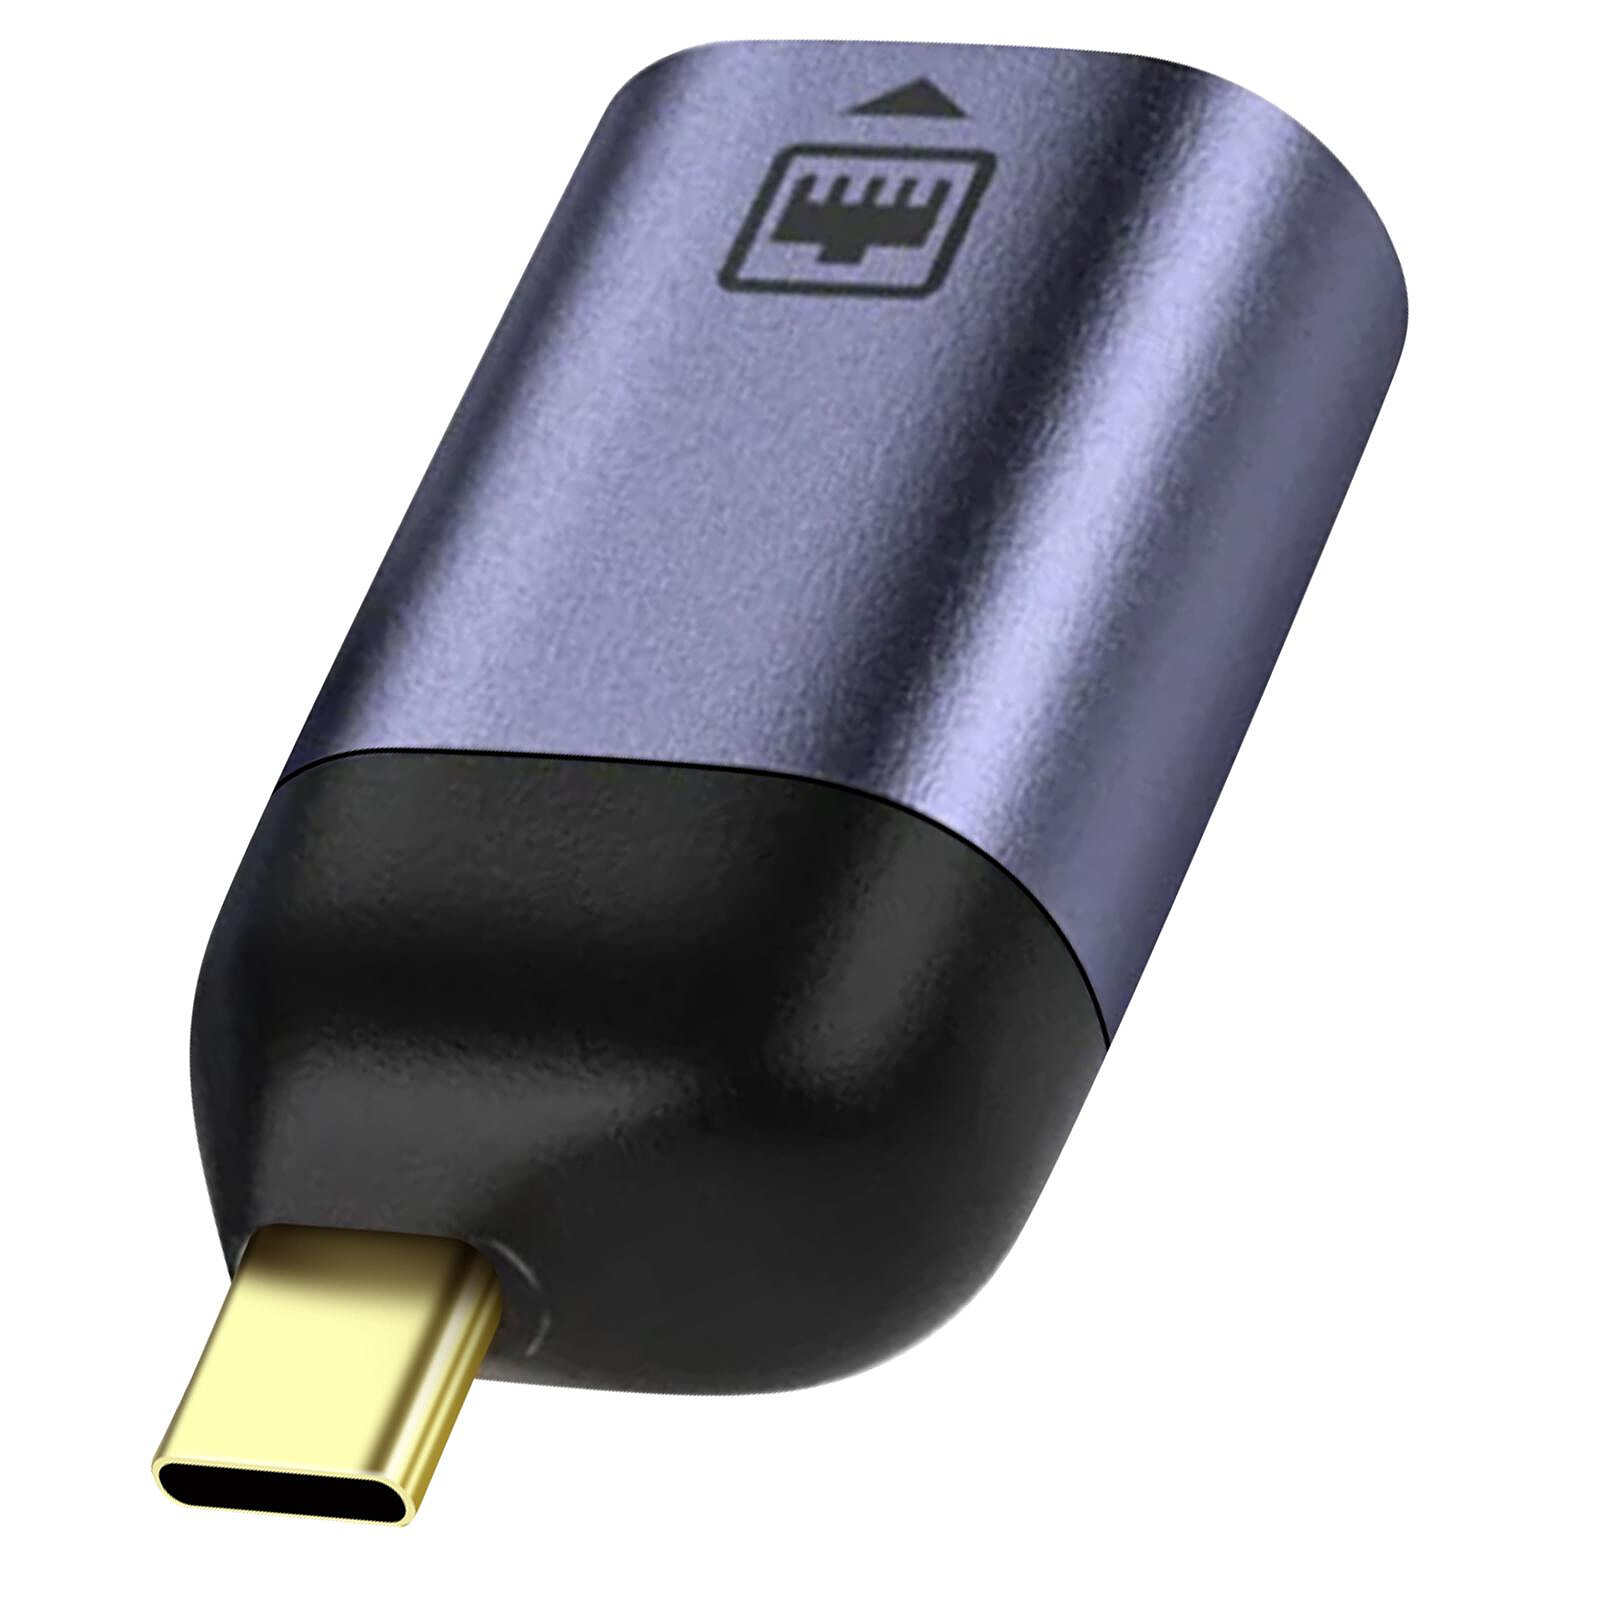 Avizar Adaptateur USB C + USB, Pack de 4 Adaptateurs OTG mâle femelle, Noir